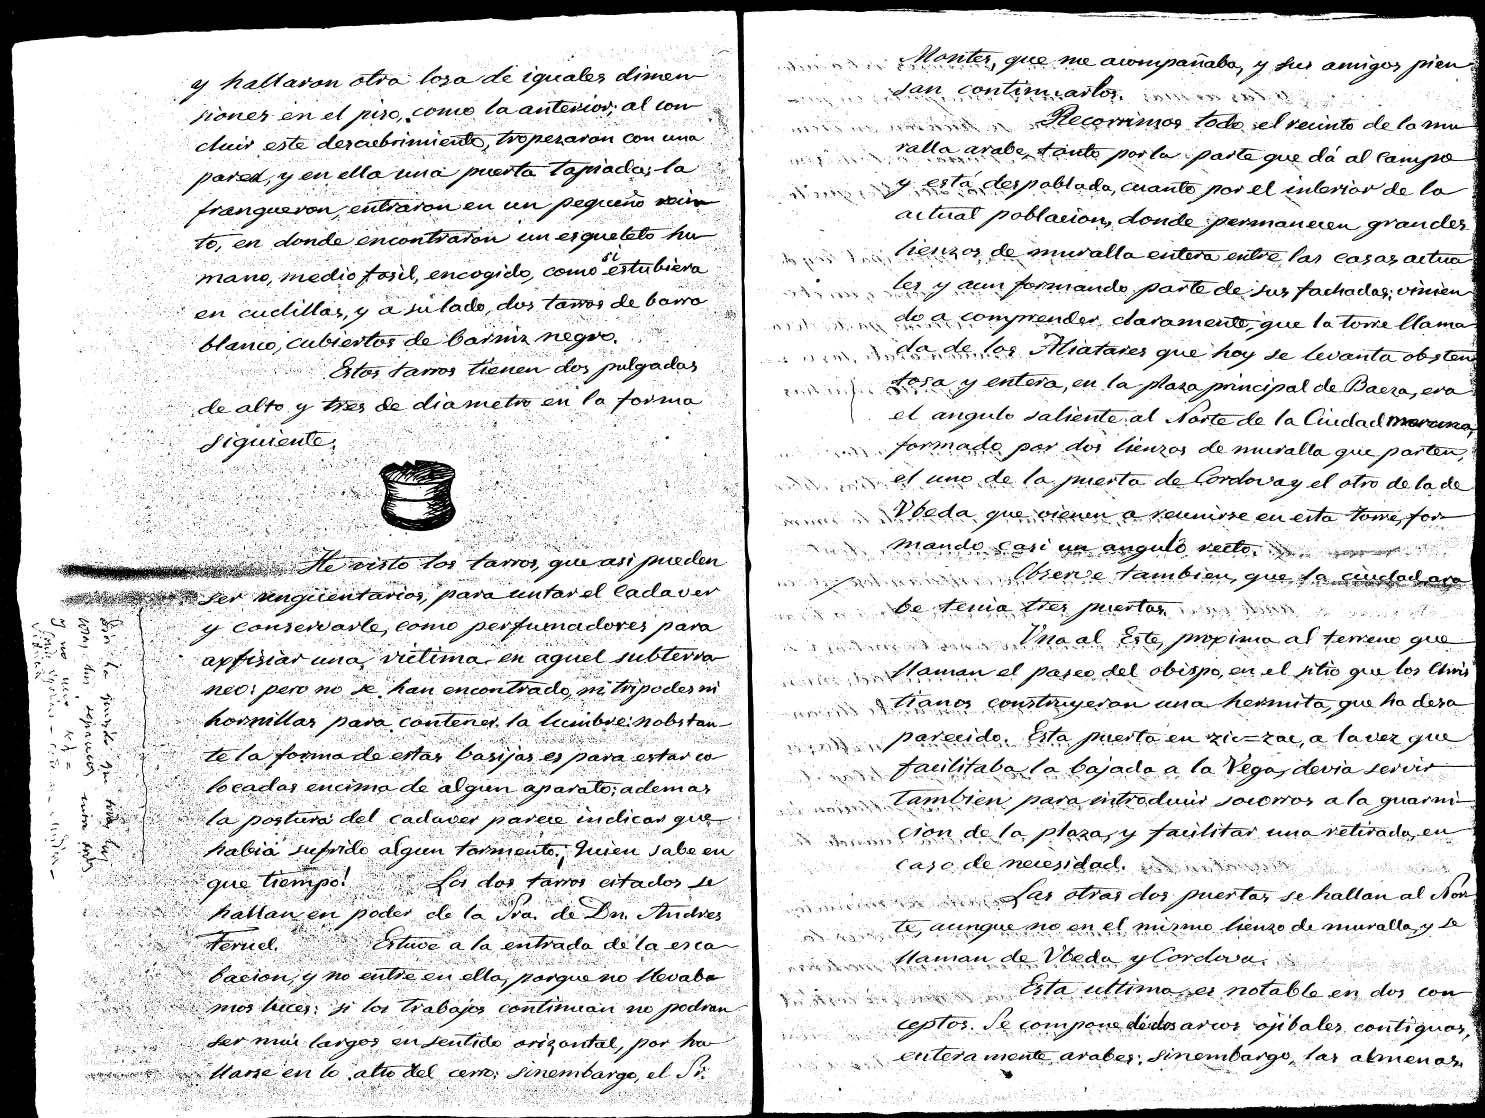 Informe de los restos arqueolgicos 1876 - Informe de los restos arqueolgicos 1876. 